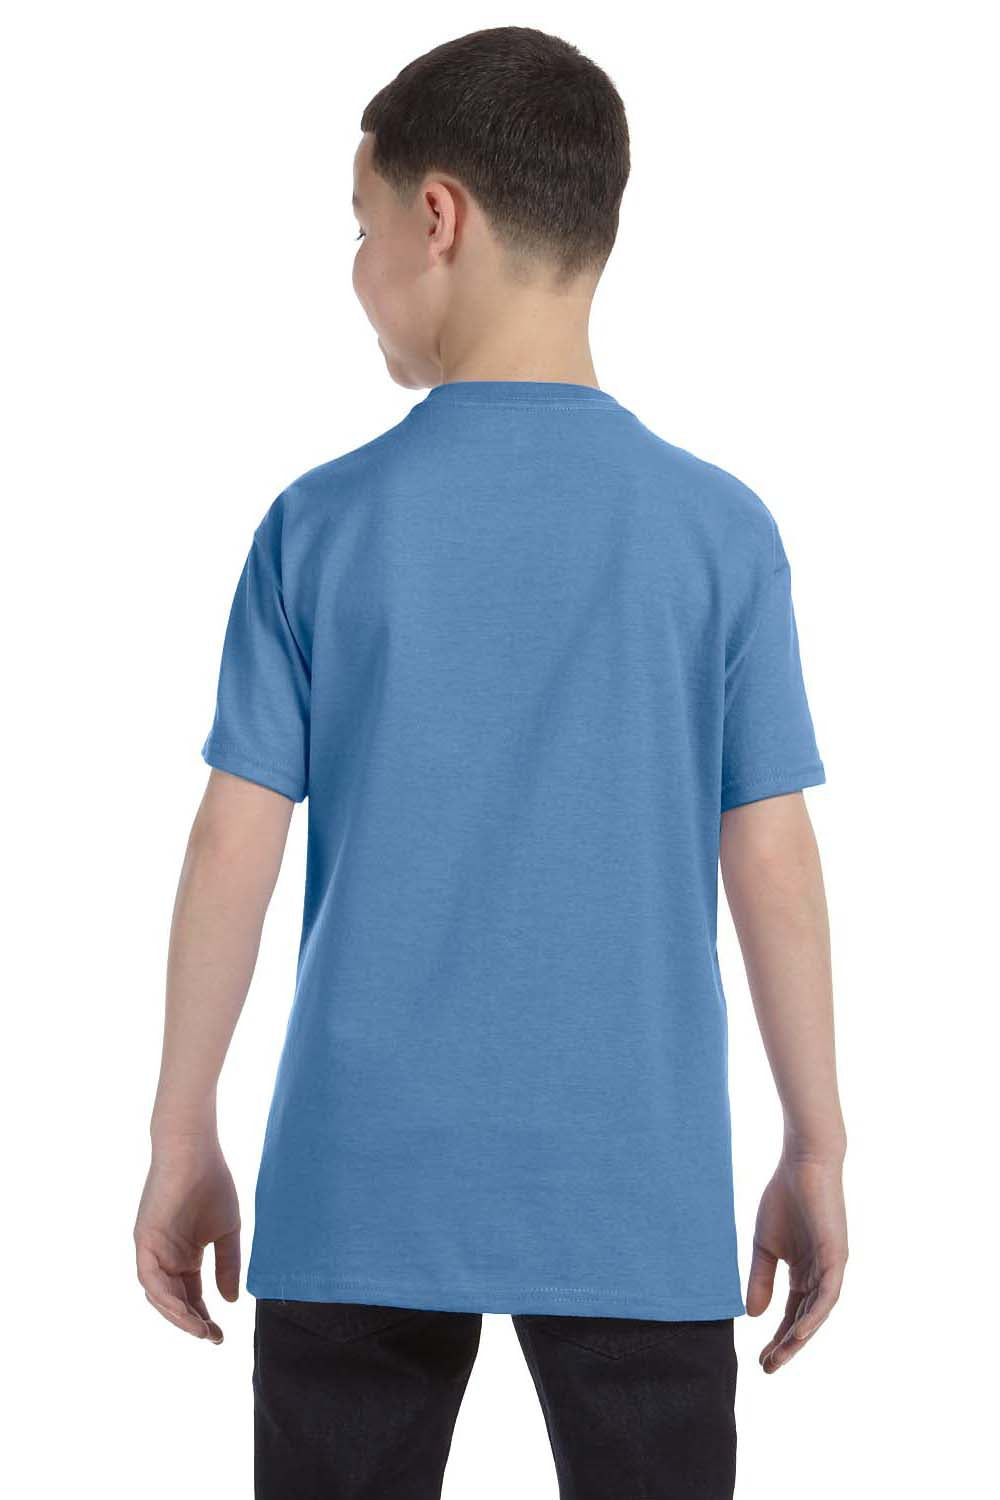 Hanes 54500 Youth ComfortSoft Short Sleeve Crewneck T-Shirt Carolina Blue Back